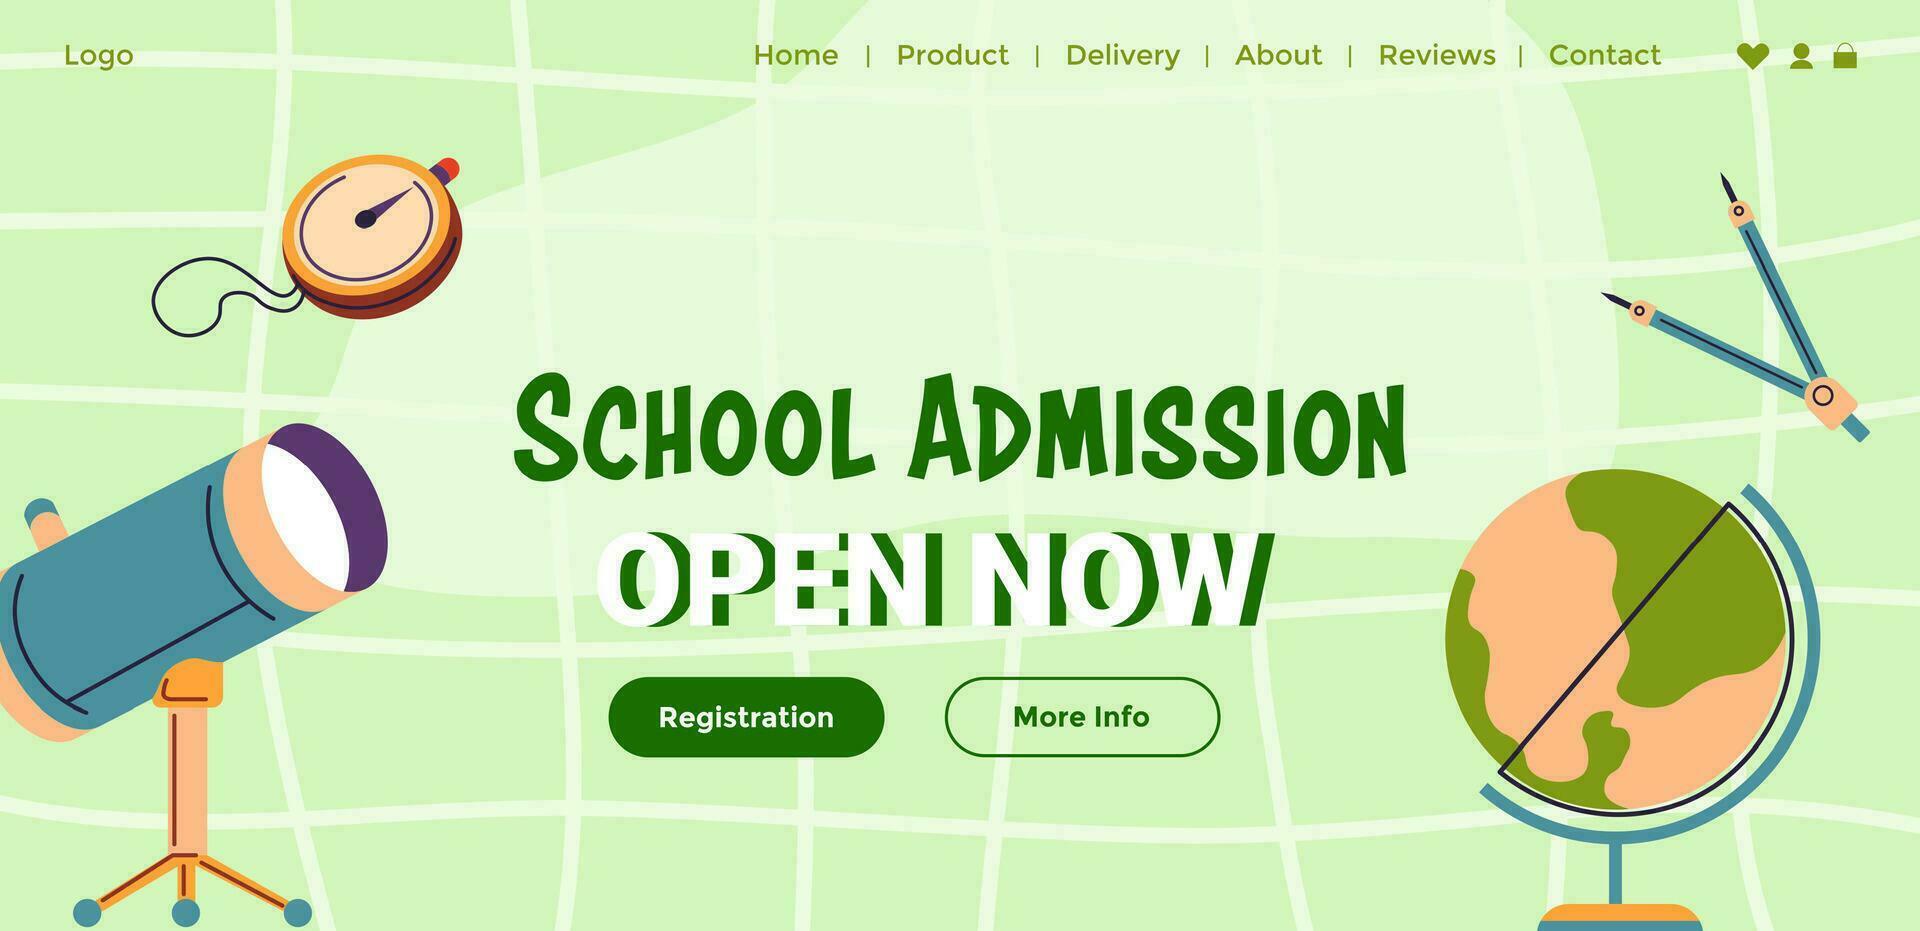 school- erkenning, Open voor registratie nu web vector